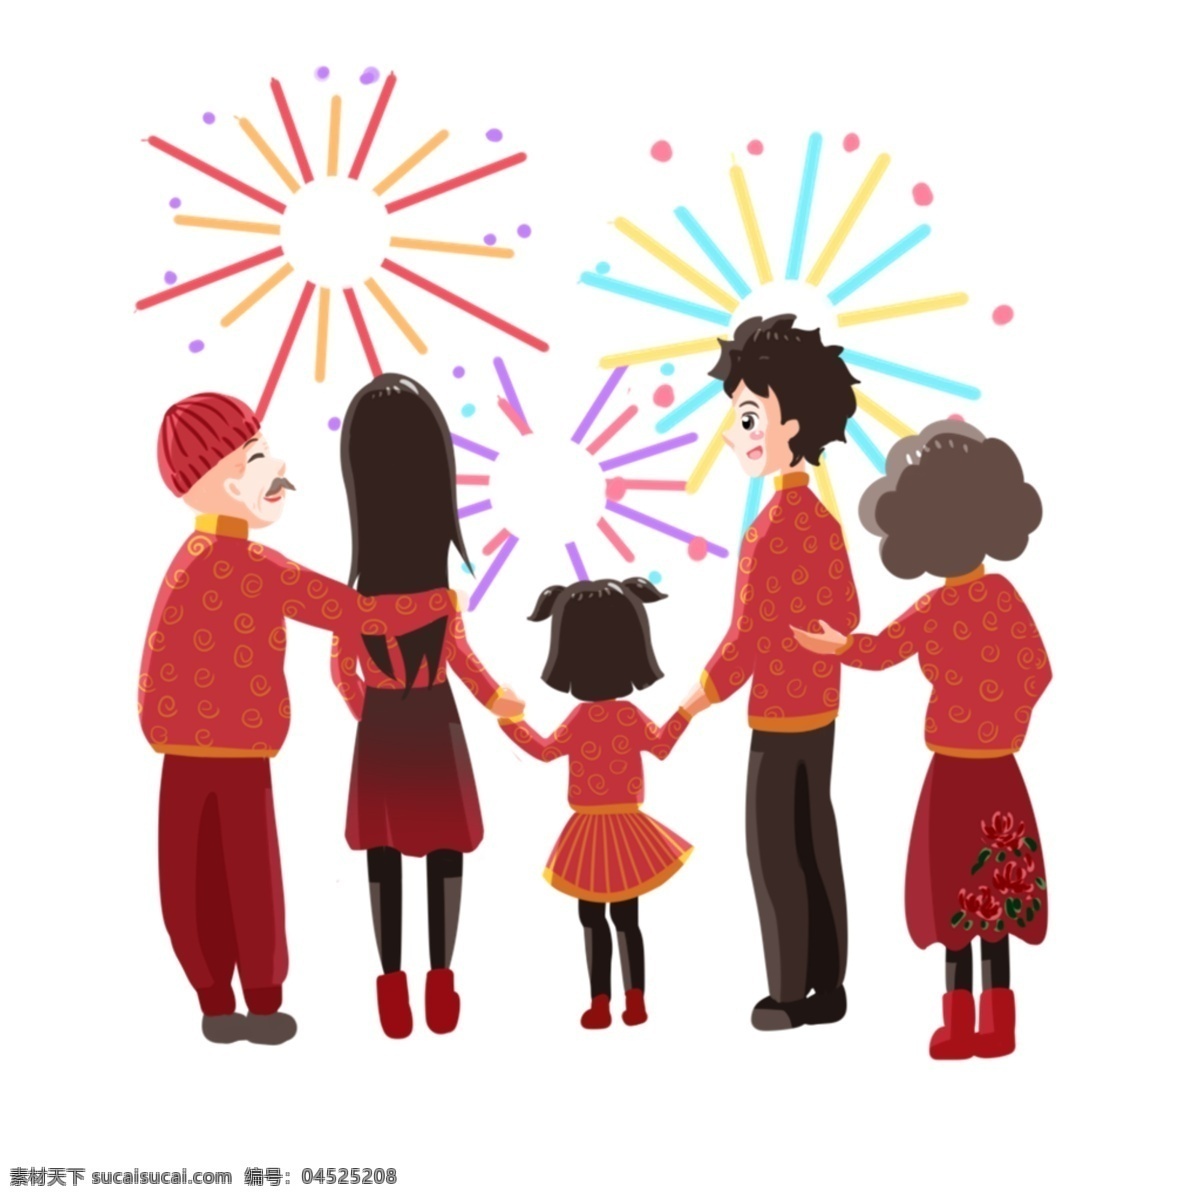 团圆 看 烟花 一家人 可爱的小女孩 幸福的一家人 红色的帽子 卡通人物 团聚人物插画 炫彩的烟花